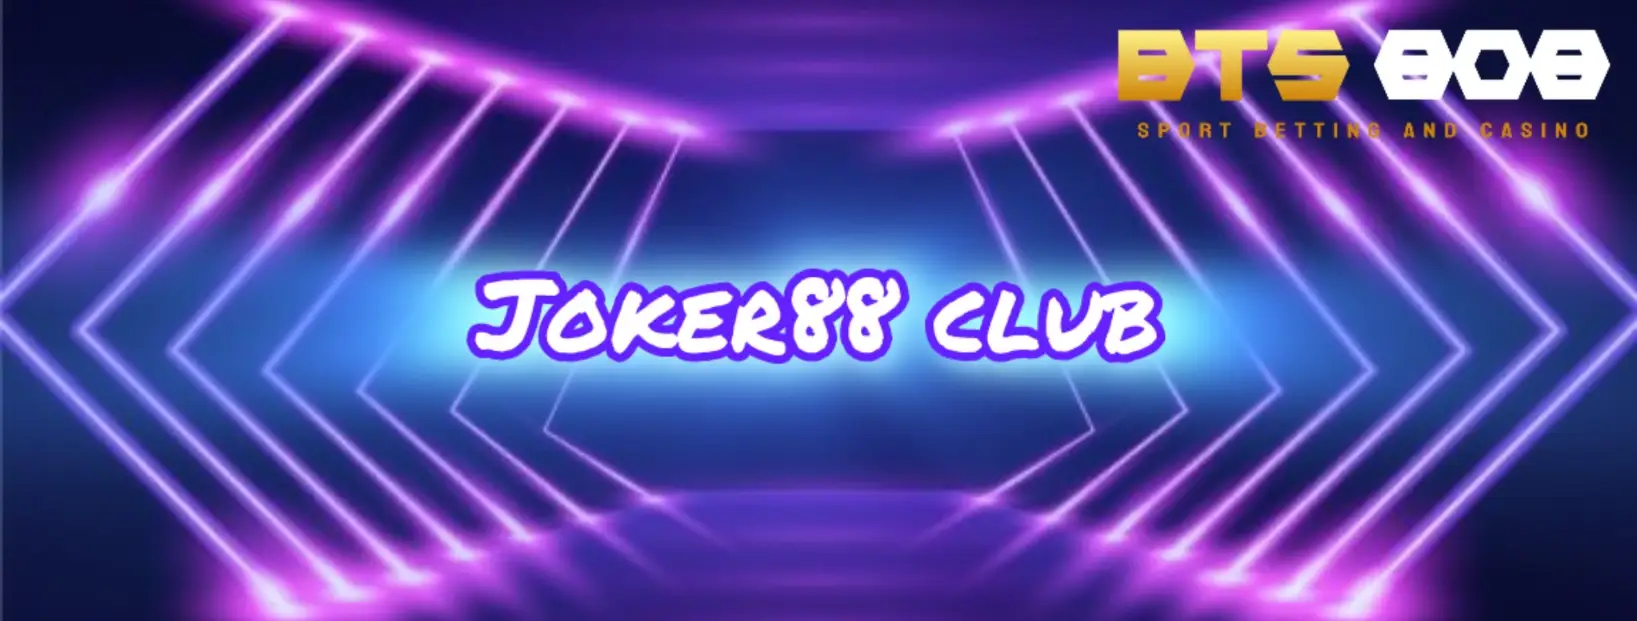 joker88club เป็นเว็บไซต์โดยตรงที่ไม่มีเอเจนซี่ใด ๆ น่าเชื่อถือและยากที่จะหลอกลวง